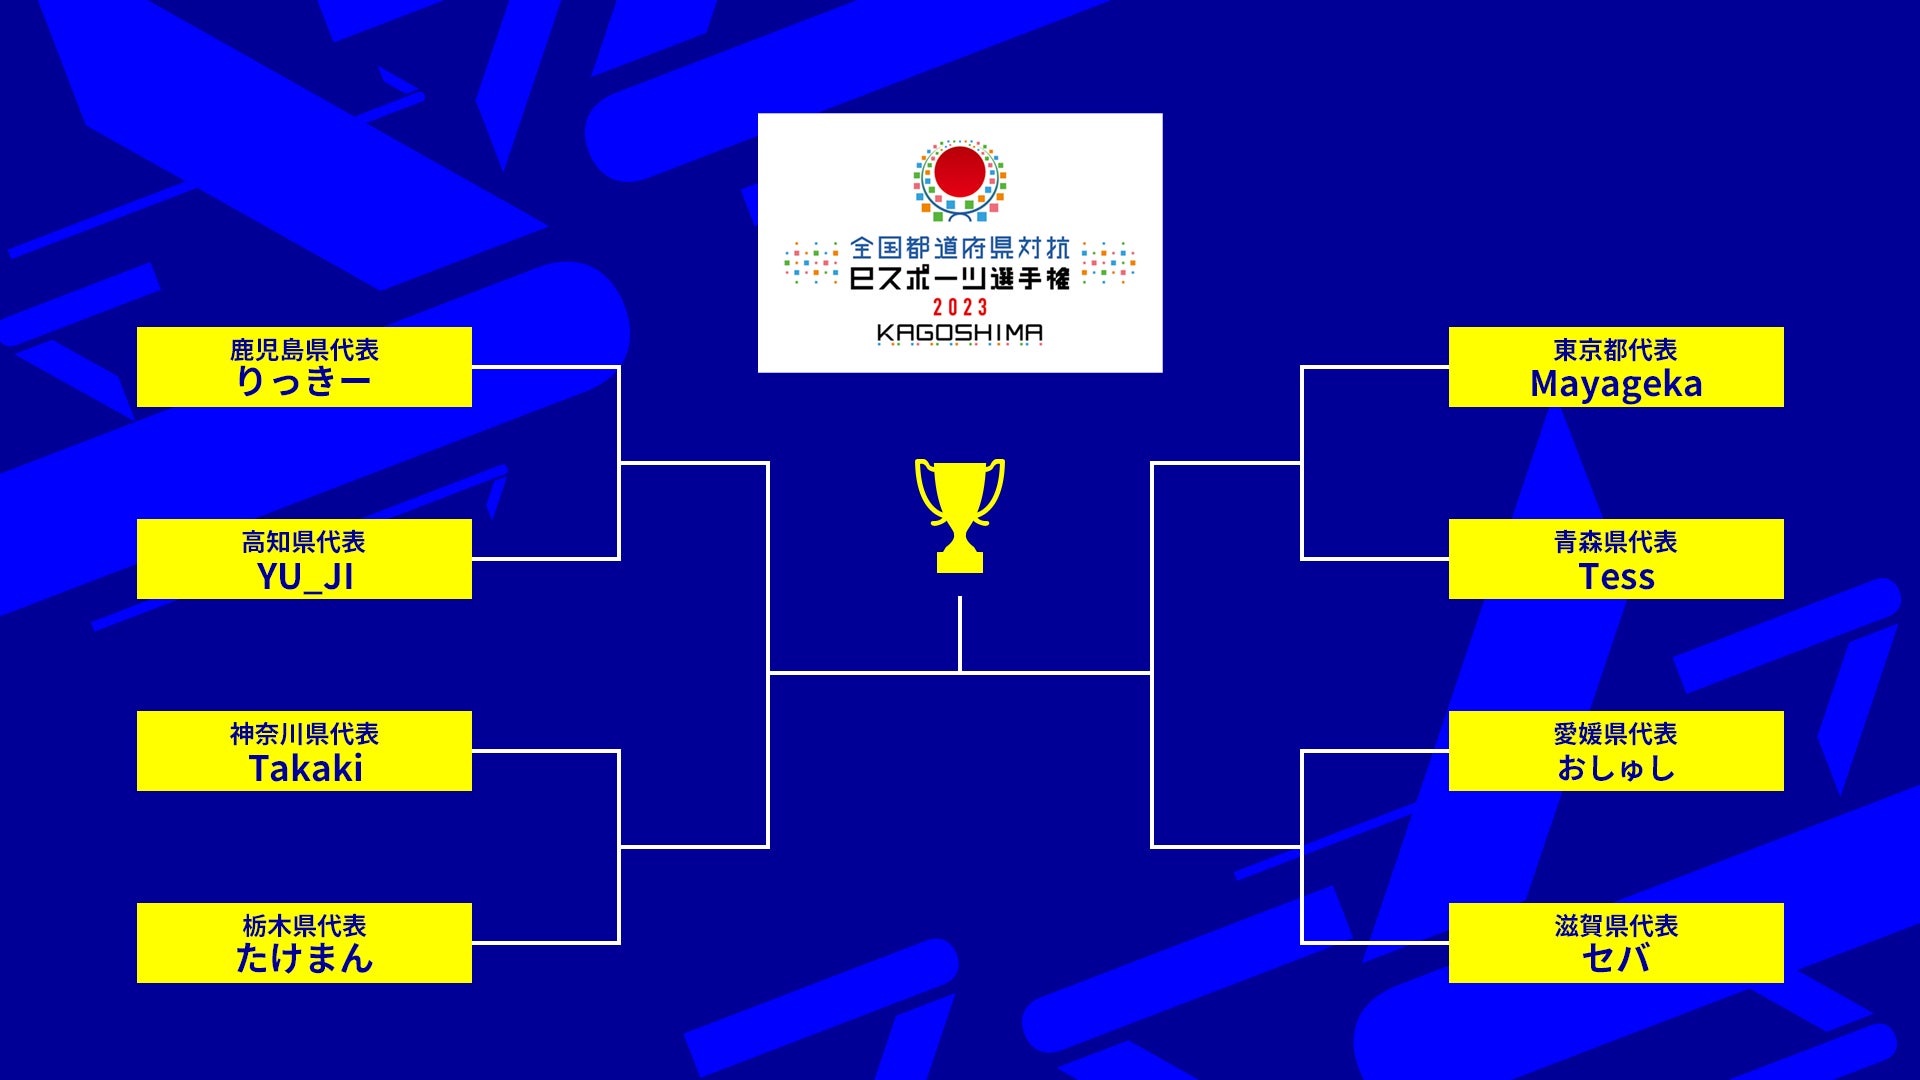 「全国都道府県対抗eスポーツ選手権 2023 KAGOSHIMA」「eFootball™」シリーズ部門の決勝大会出場選手が決定！